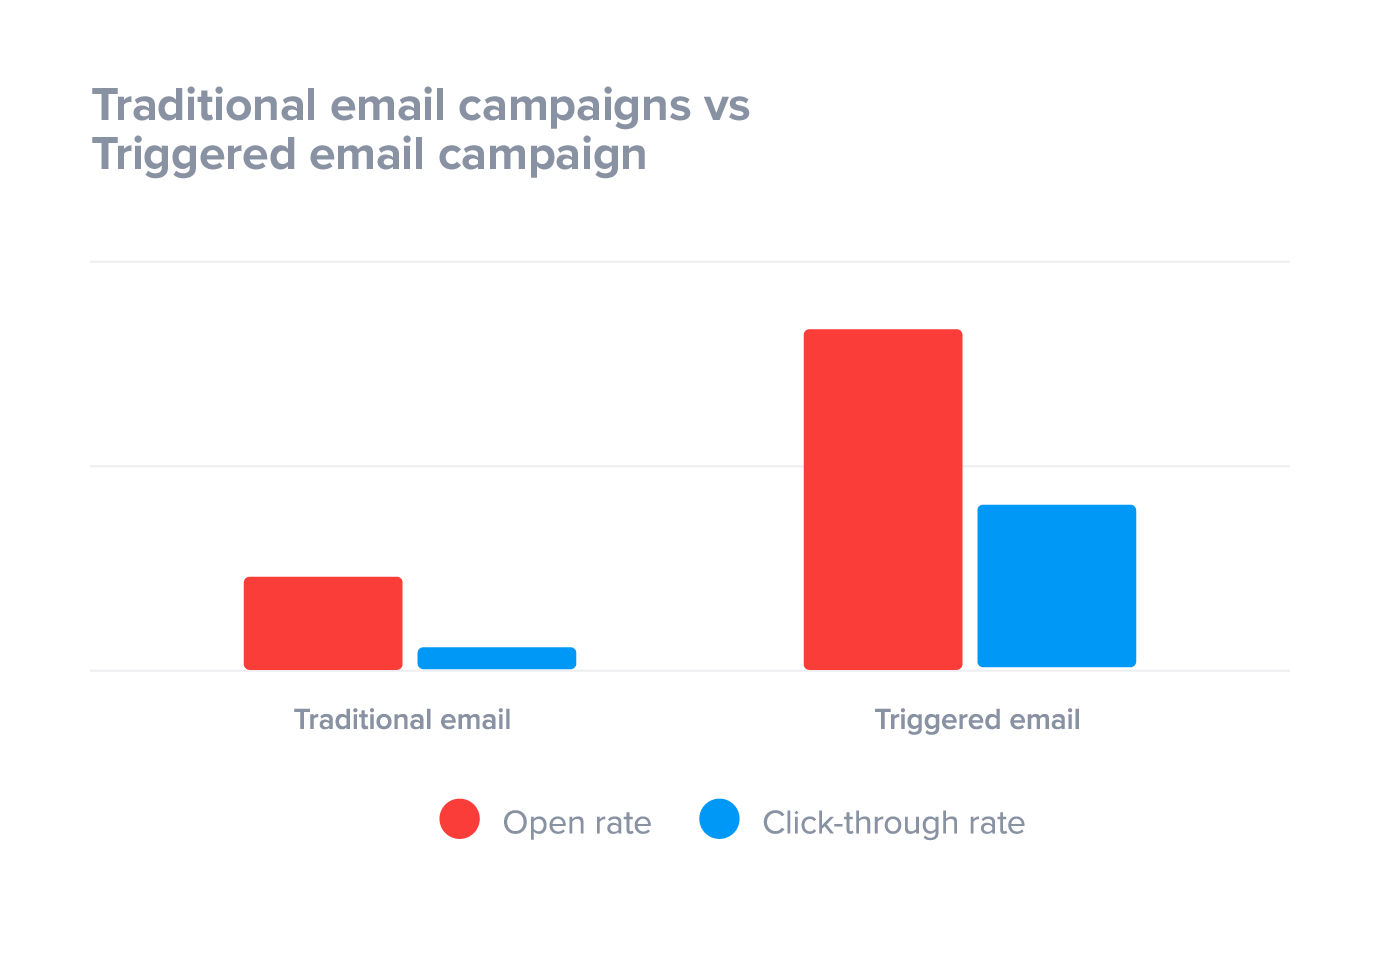 Le campagne e-mail attivate superano le campagne e-mail tradizionali